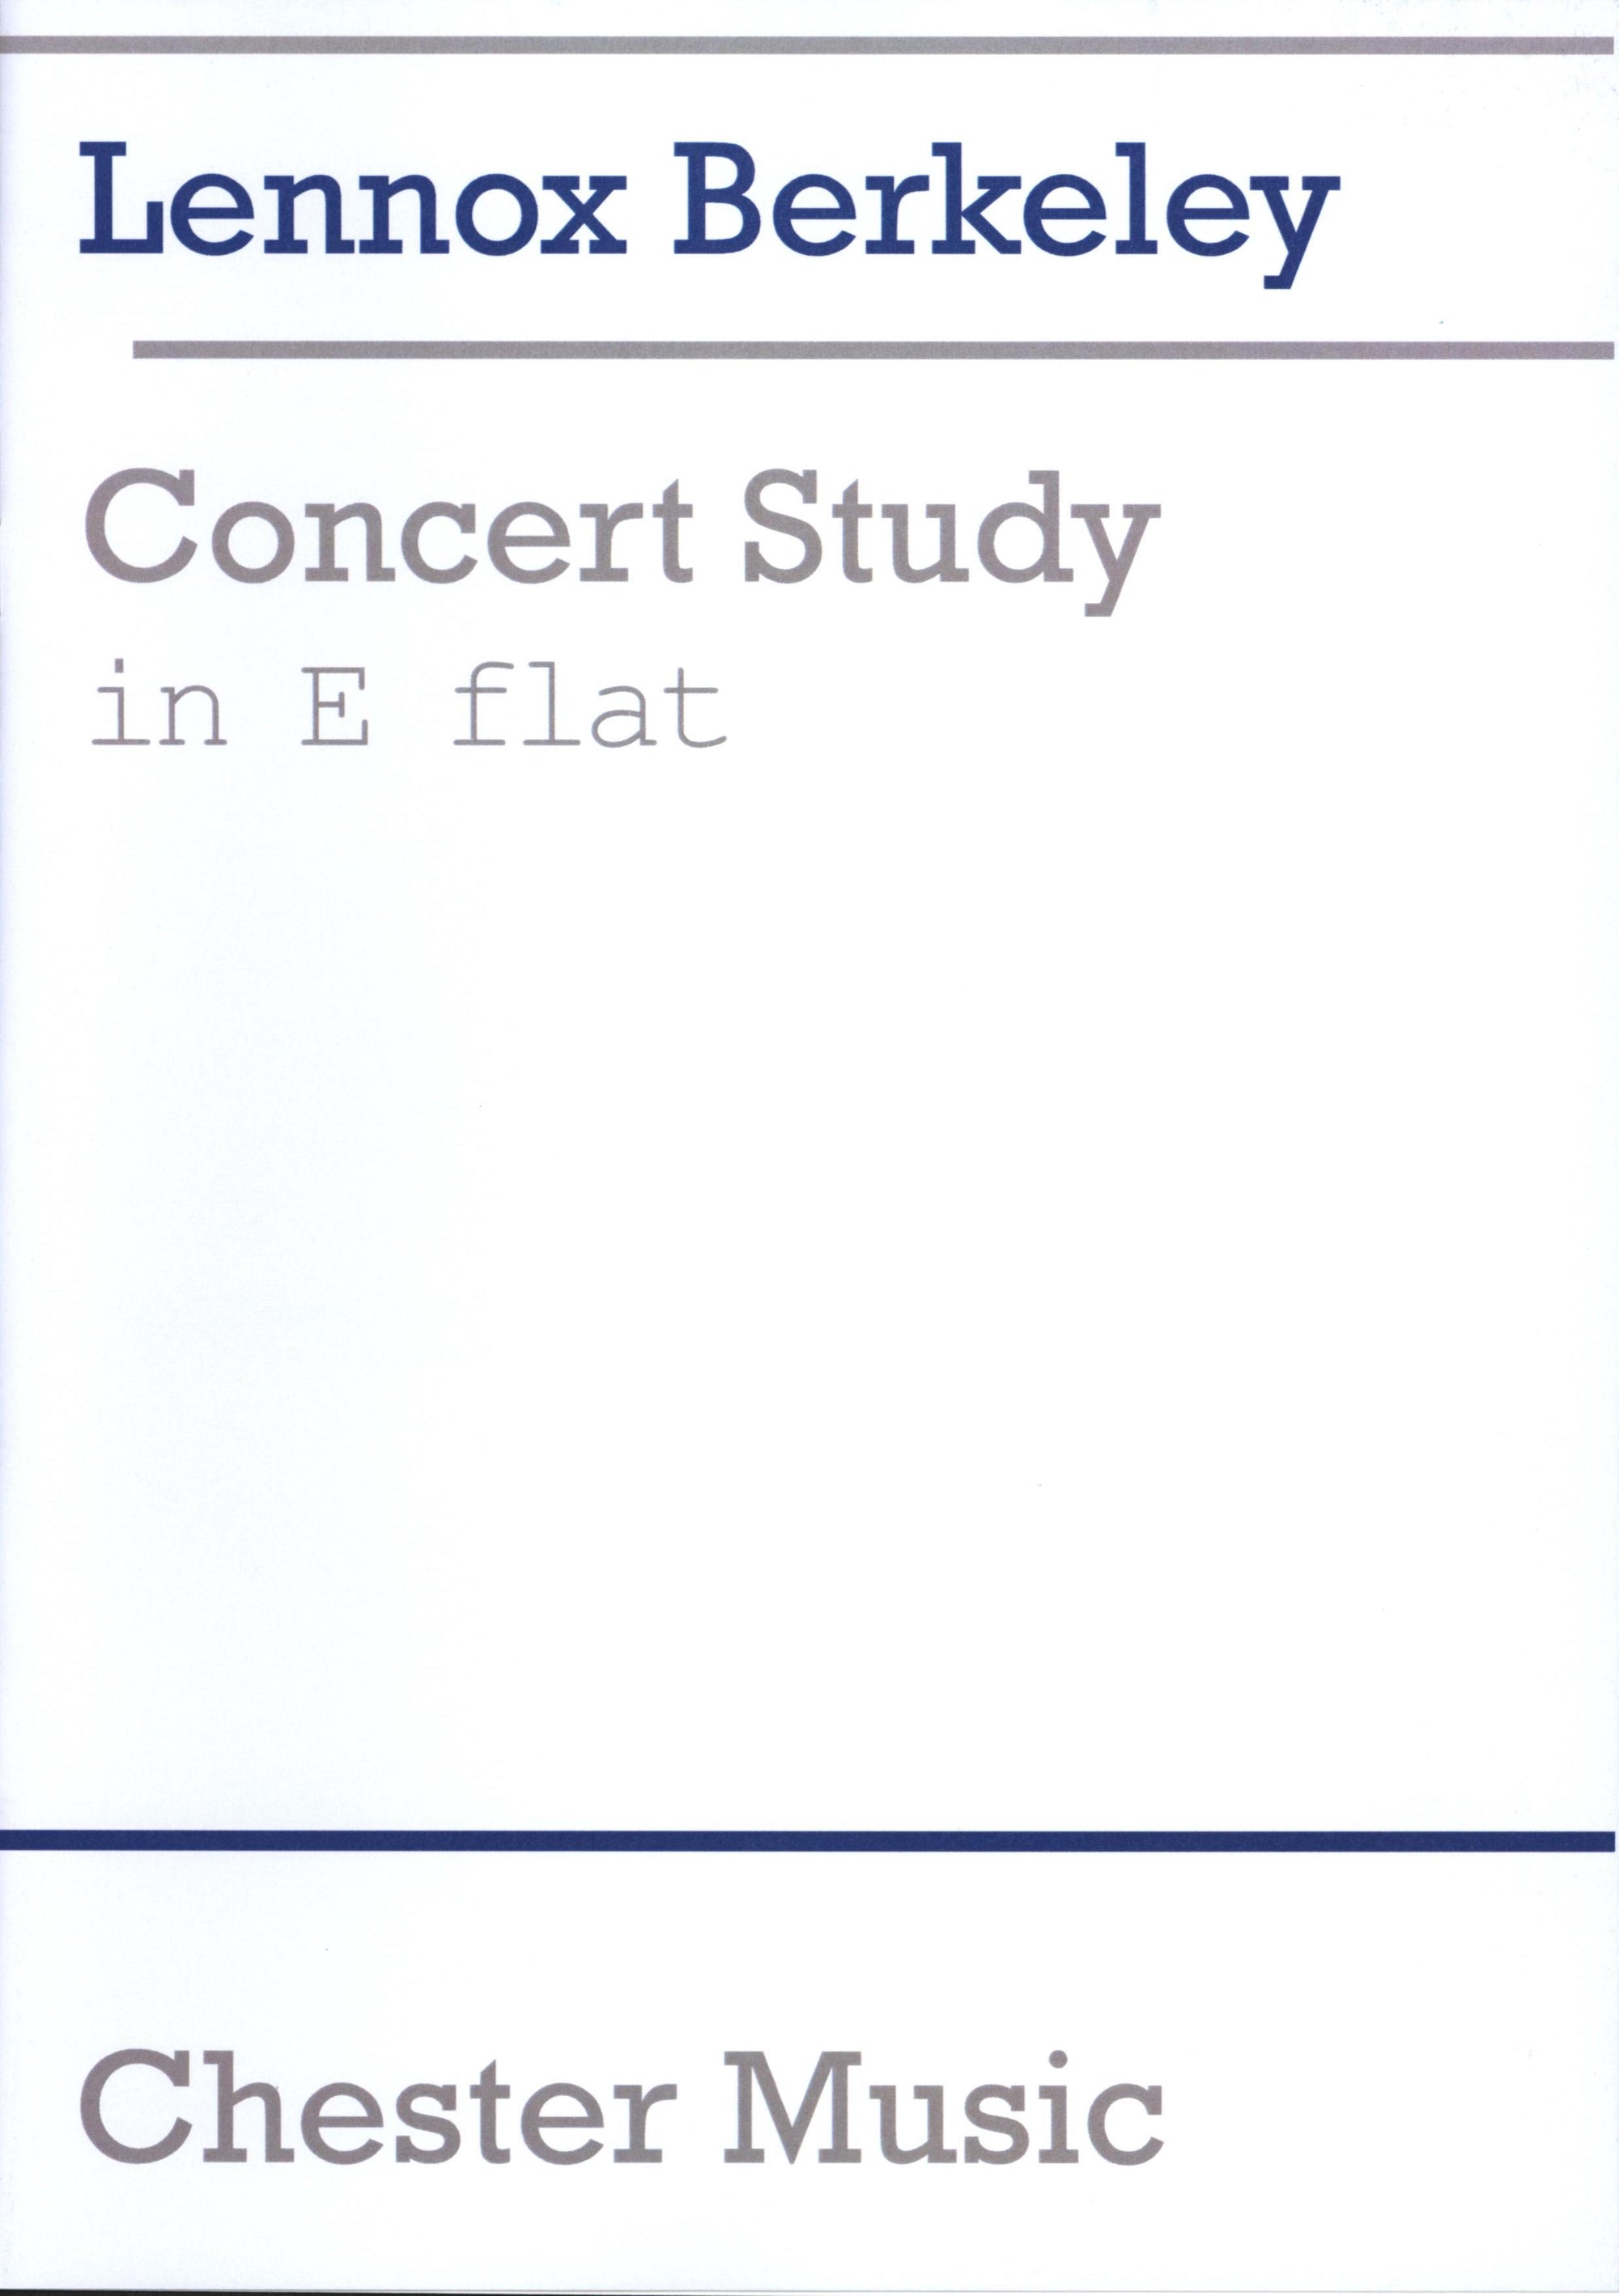 Berkeley: Concert Study in E-flat, Op. 48, No. 2